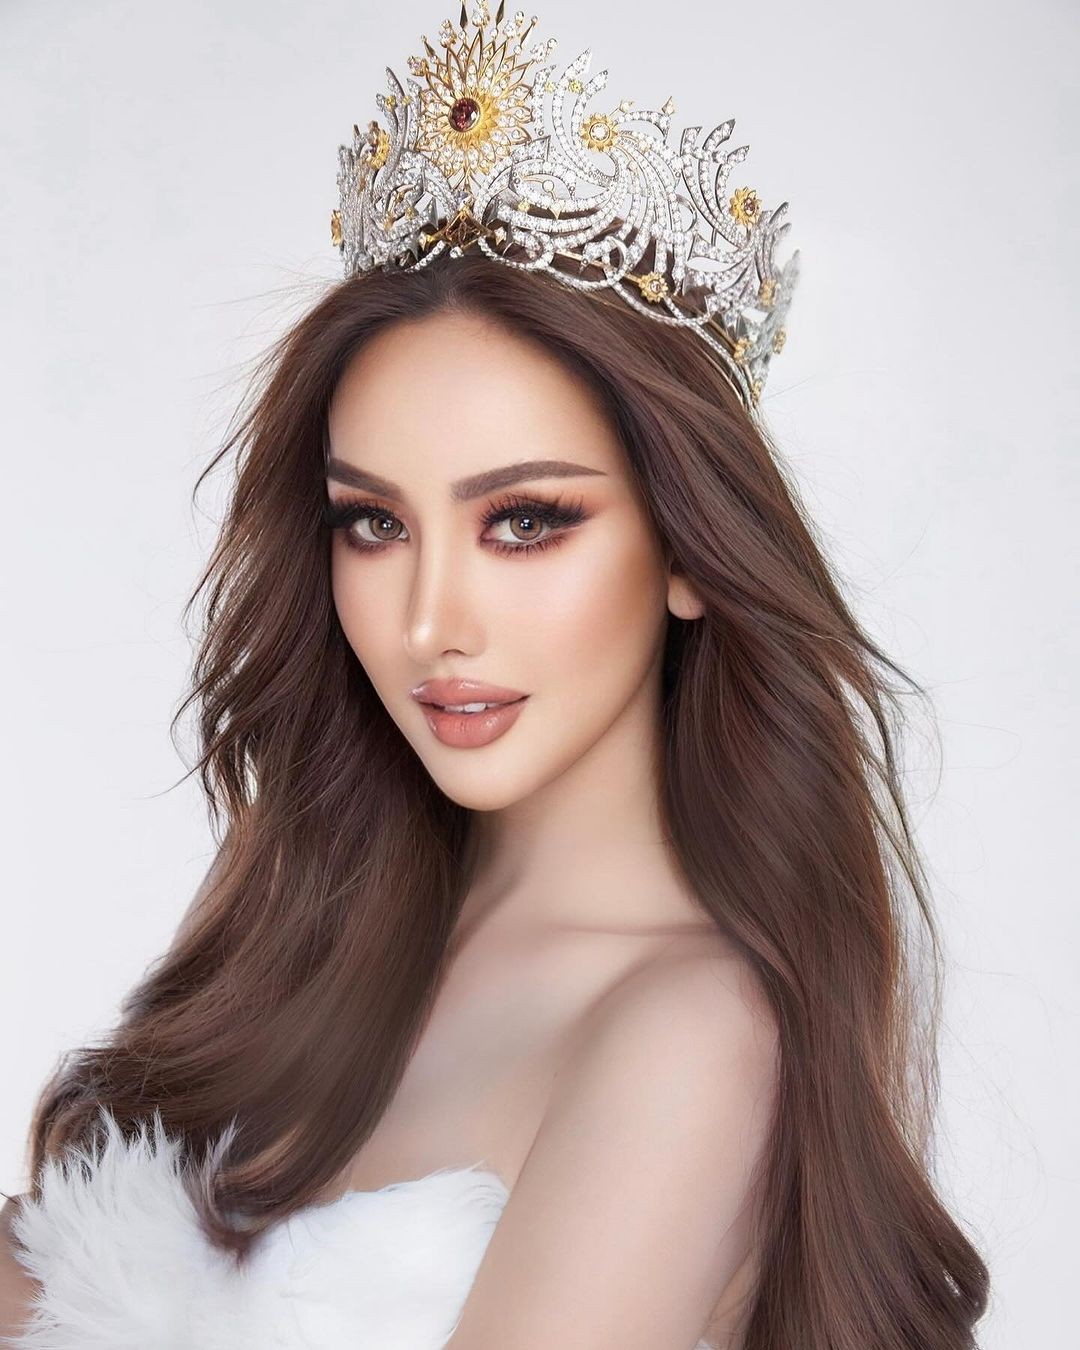 Người đẹp cao 1,76 m gây chú ý ở Hoa hậu Hòa bình Thái Lan ảnh 1